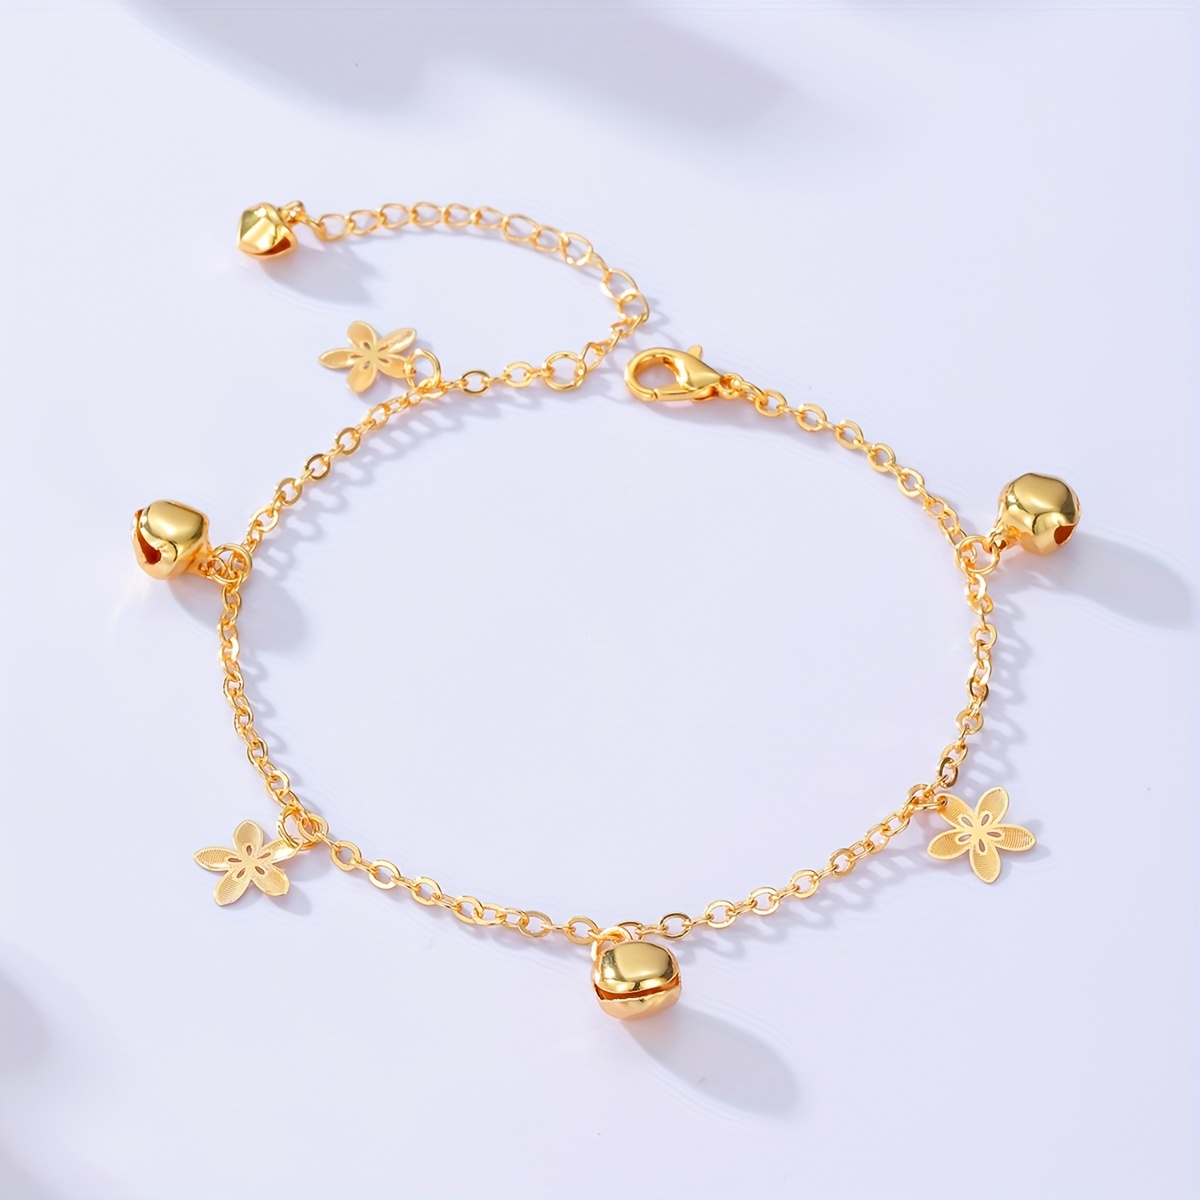 Plum Flower Bell Shape Pendant Thin Chain Anklet 18K Gold Plated Copper  Ankle Bracelet For Women Girls 1 Pc